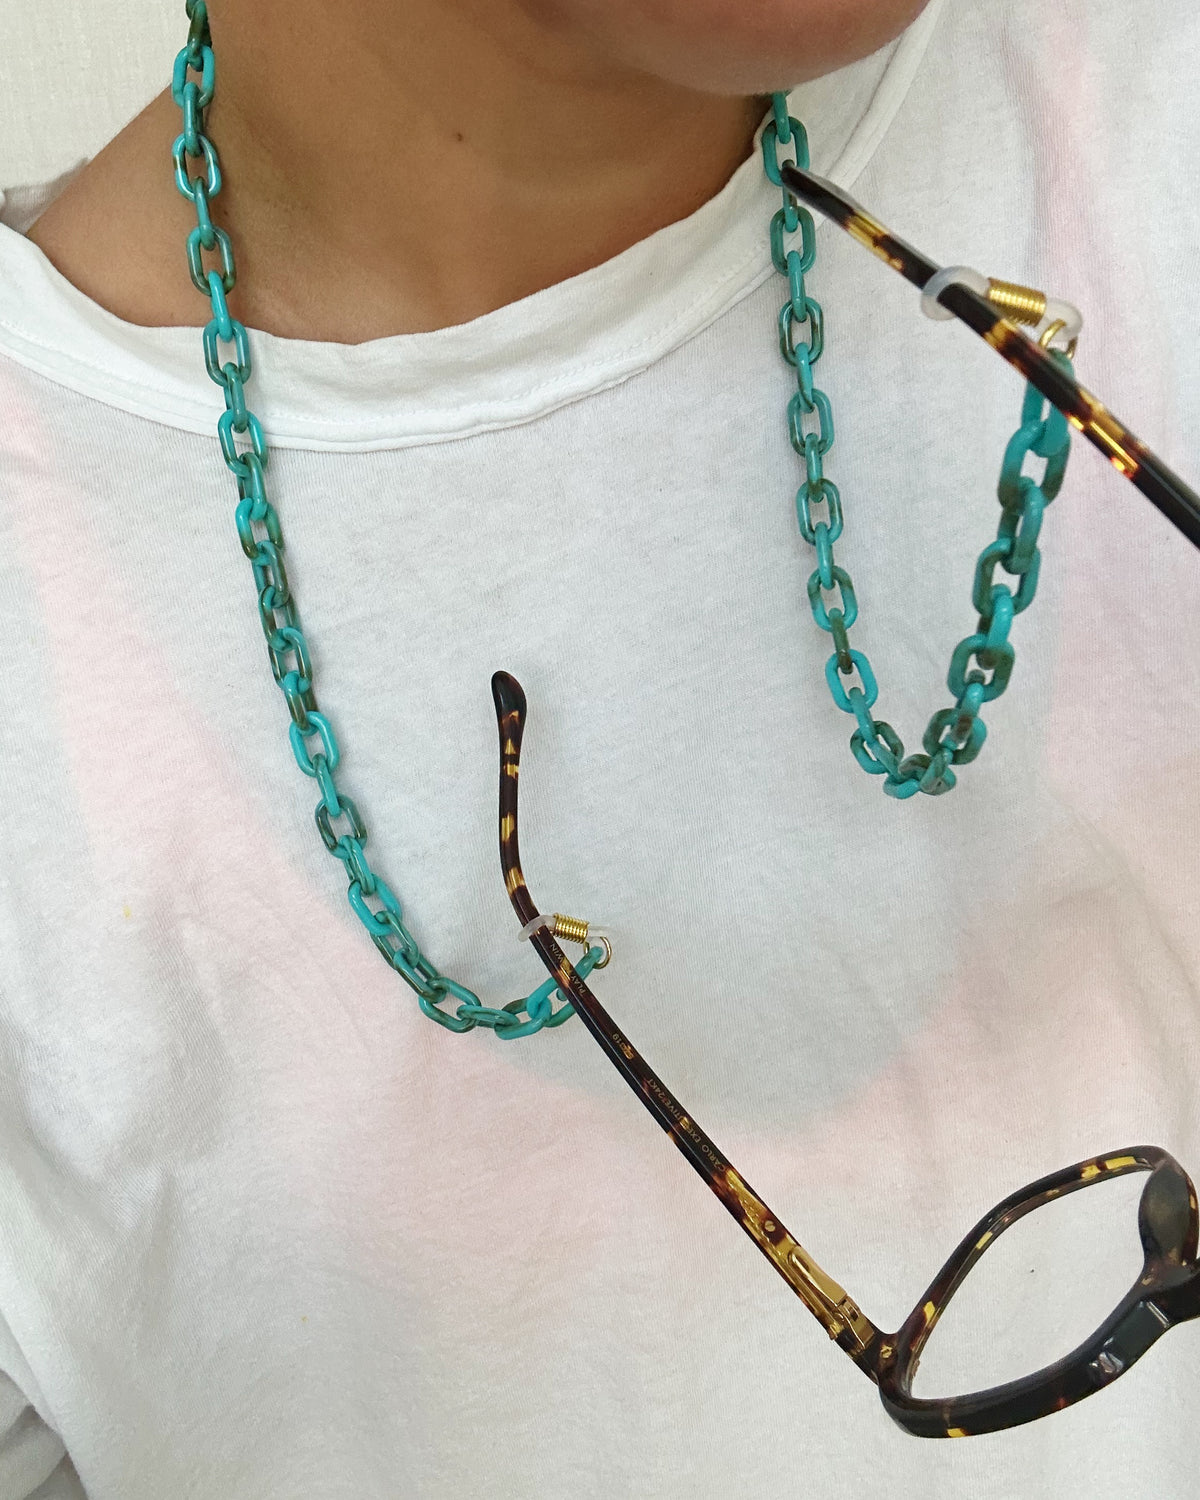 Jewelry Making: Beaded Sunglasses Chain